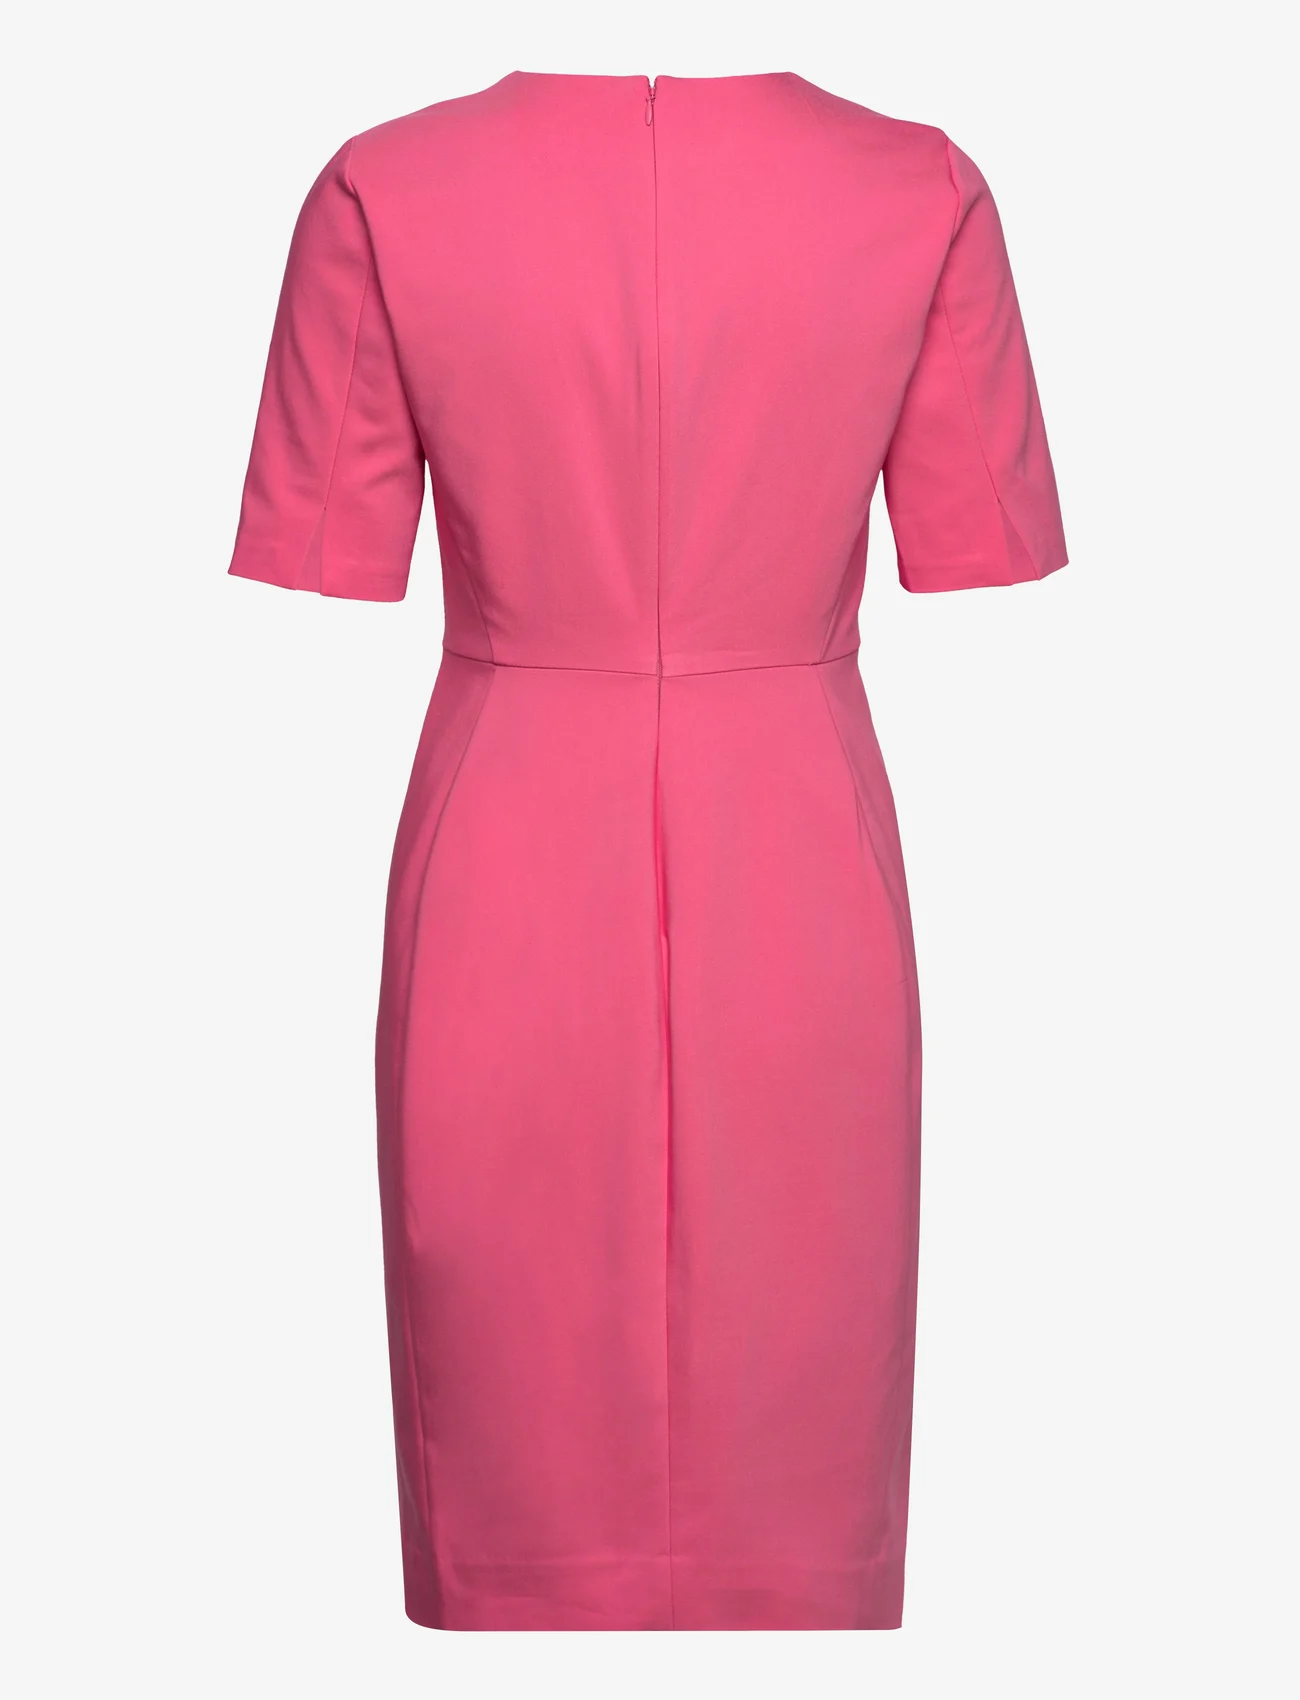 InWear - Zella Dress - feestelijke kleding voor outlet-prijzen - pink rose - 1